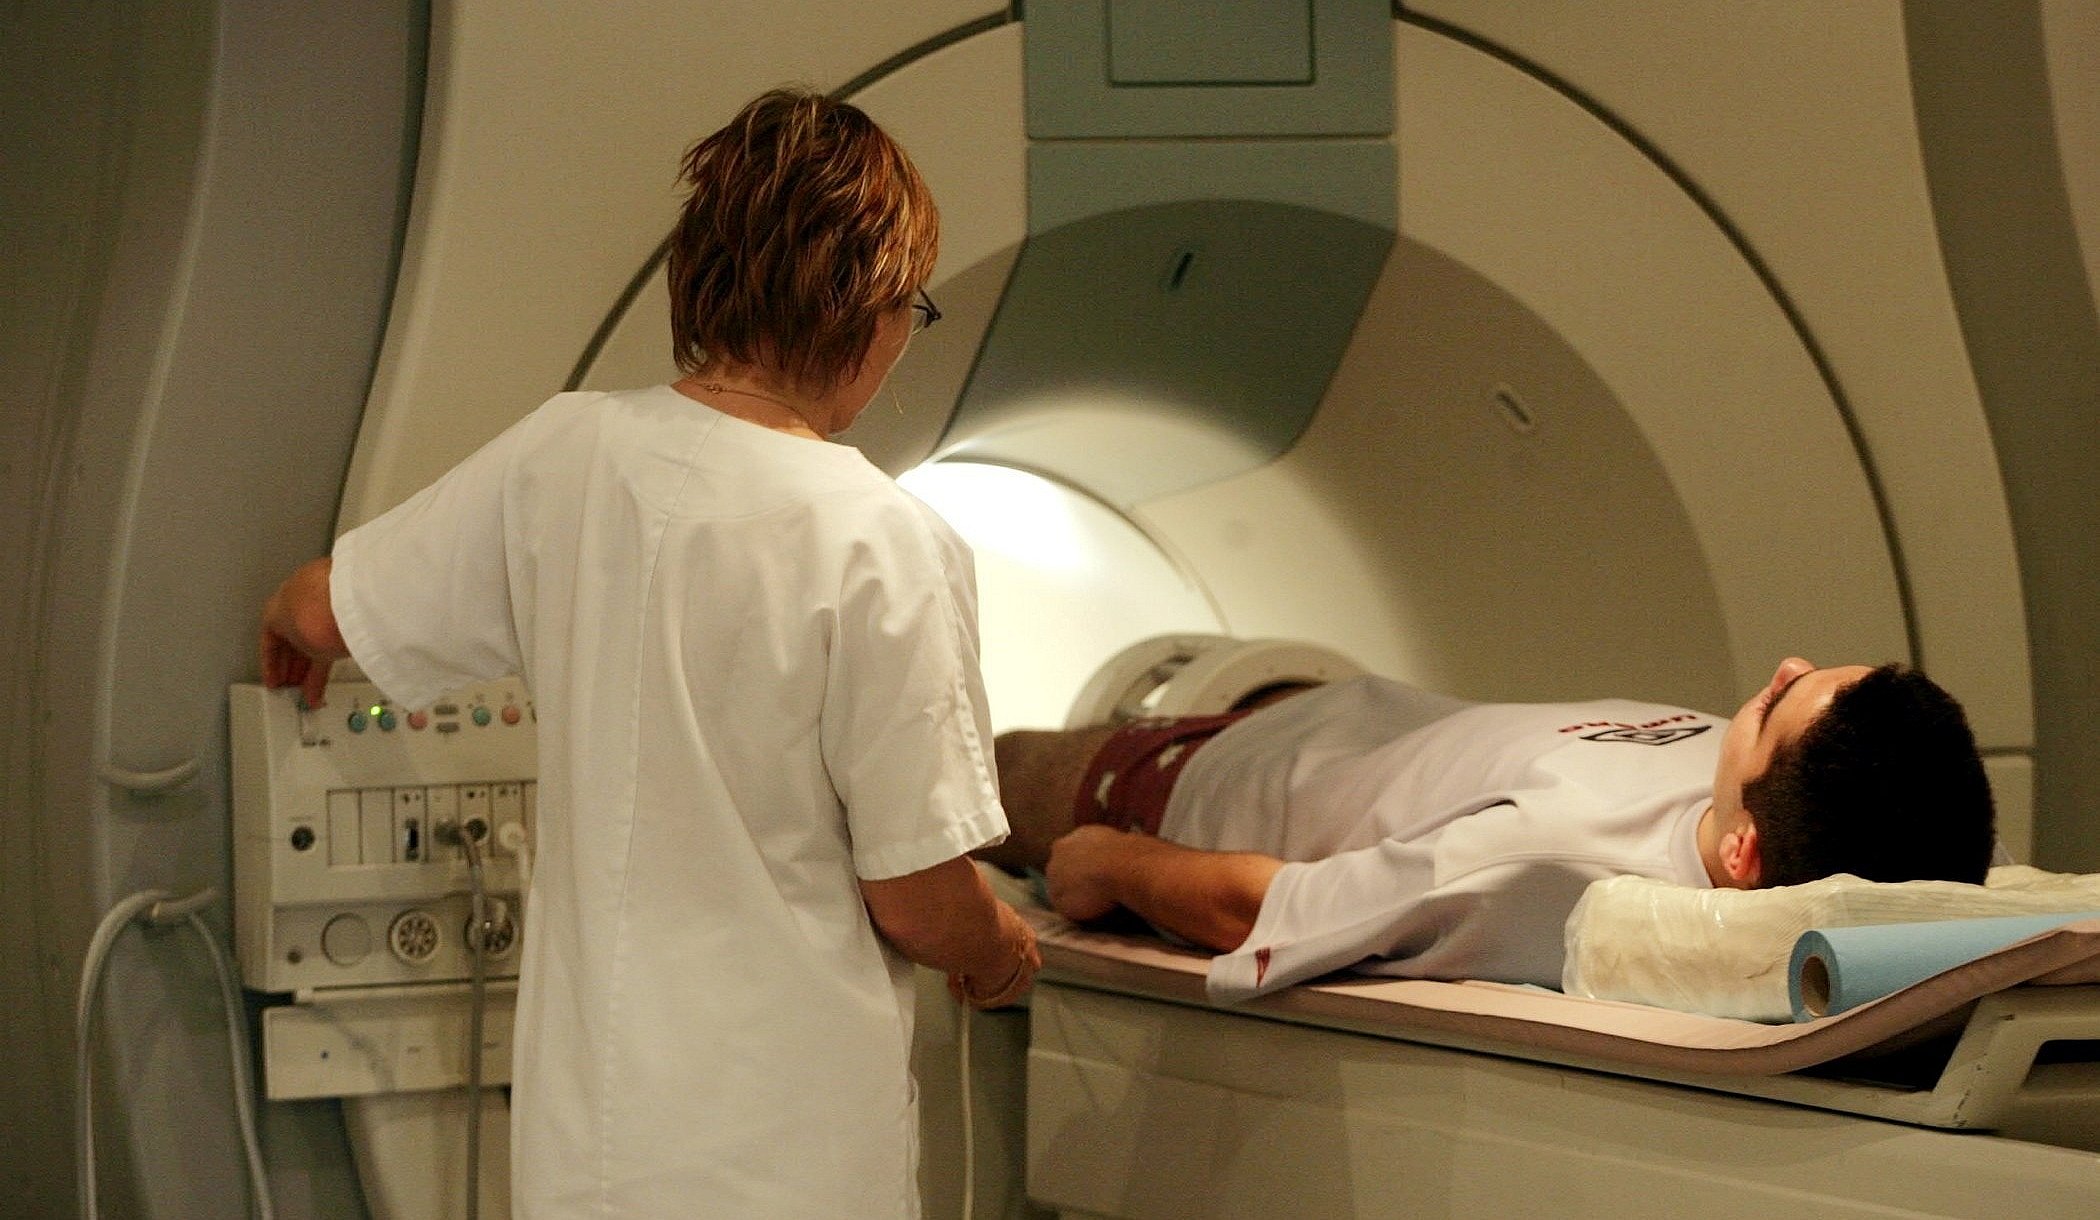 forskning: Mænd ser på afklædte kvinder i en MR-scanner | TV2